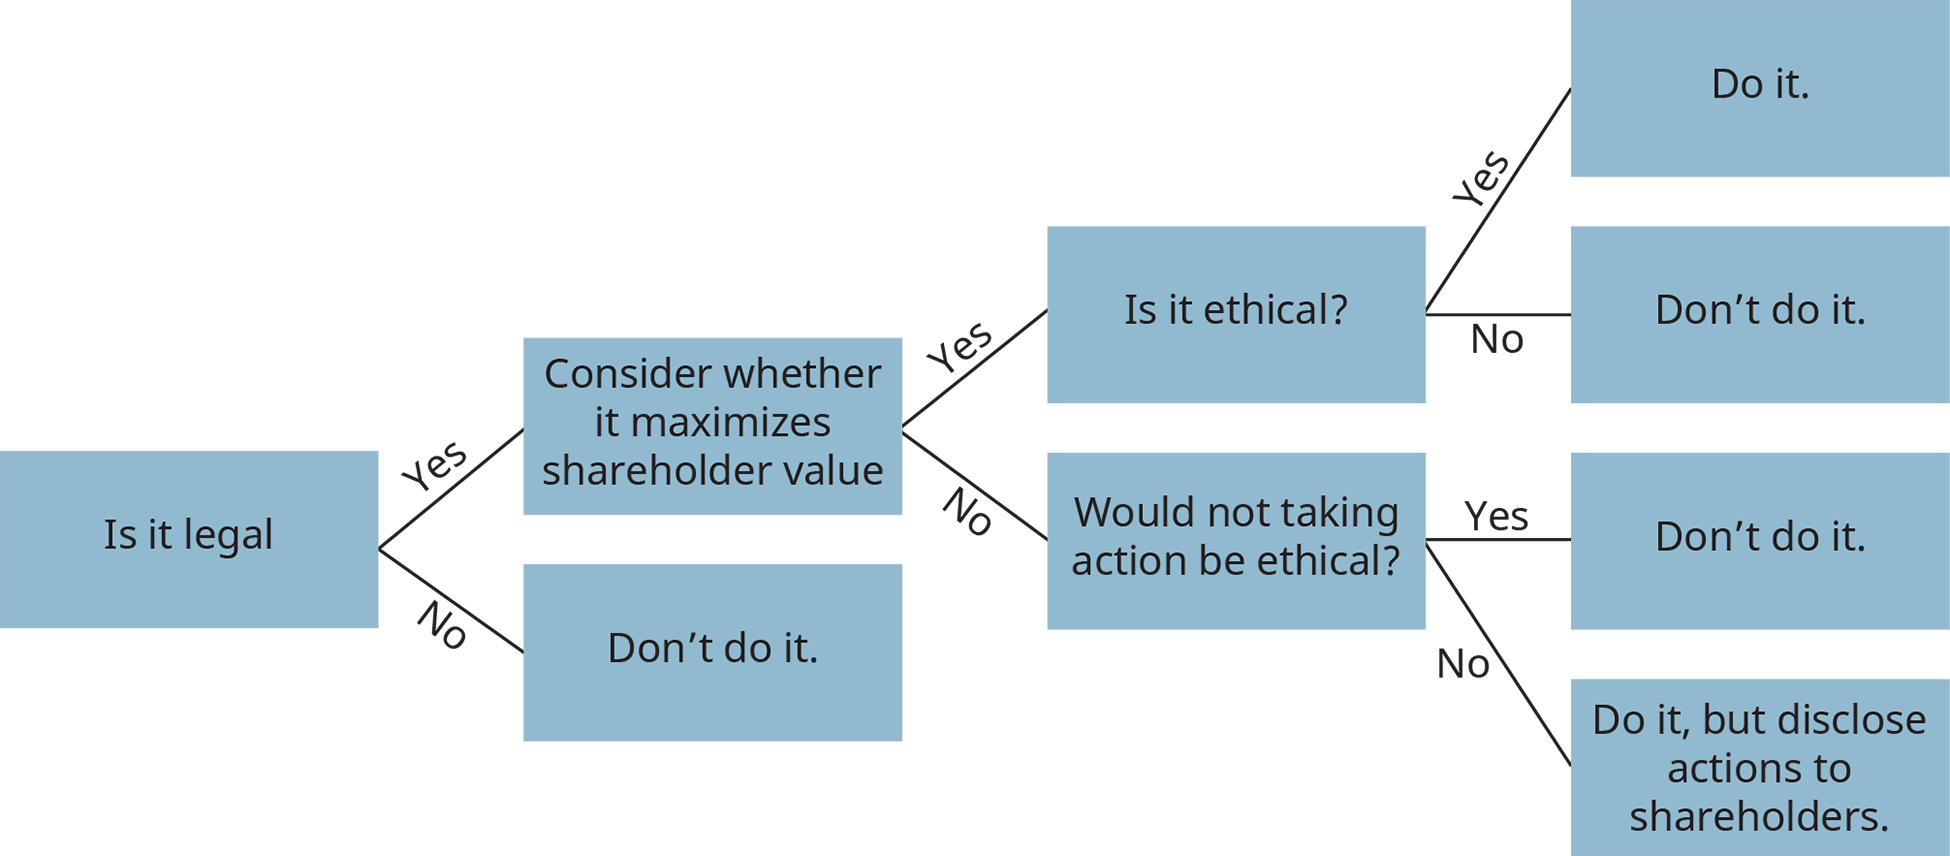 يوضح رسم تخطيطي لشجرة القرار عملية صنع القرار الأخلاقي.